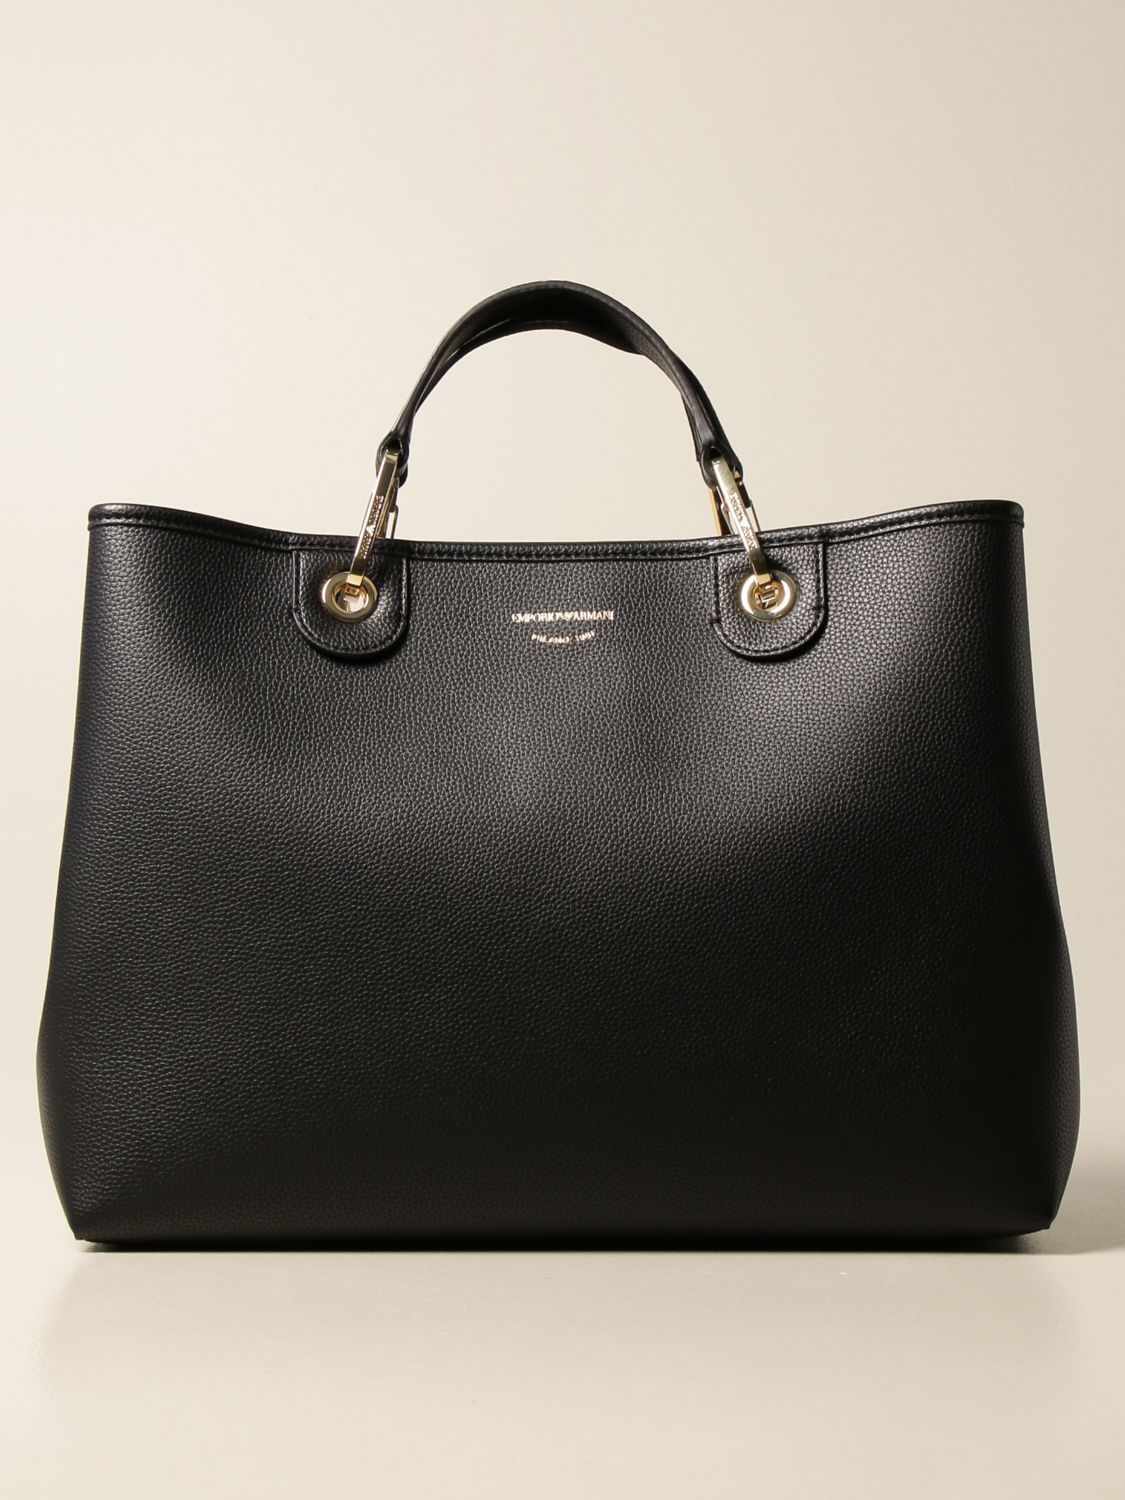 EMPORIO ARMANI: handbag in textured synthetic leather - Black | Emporio ...